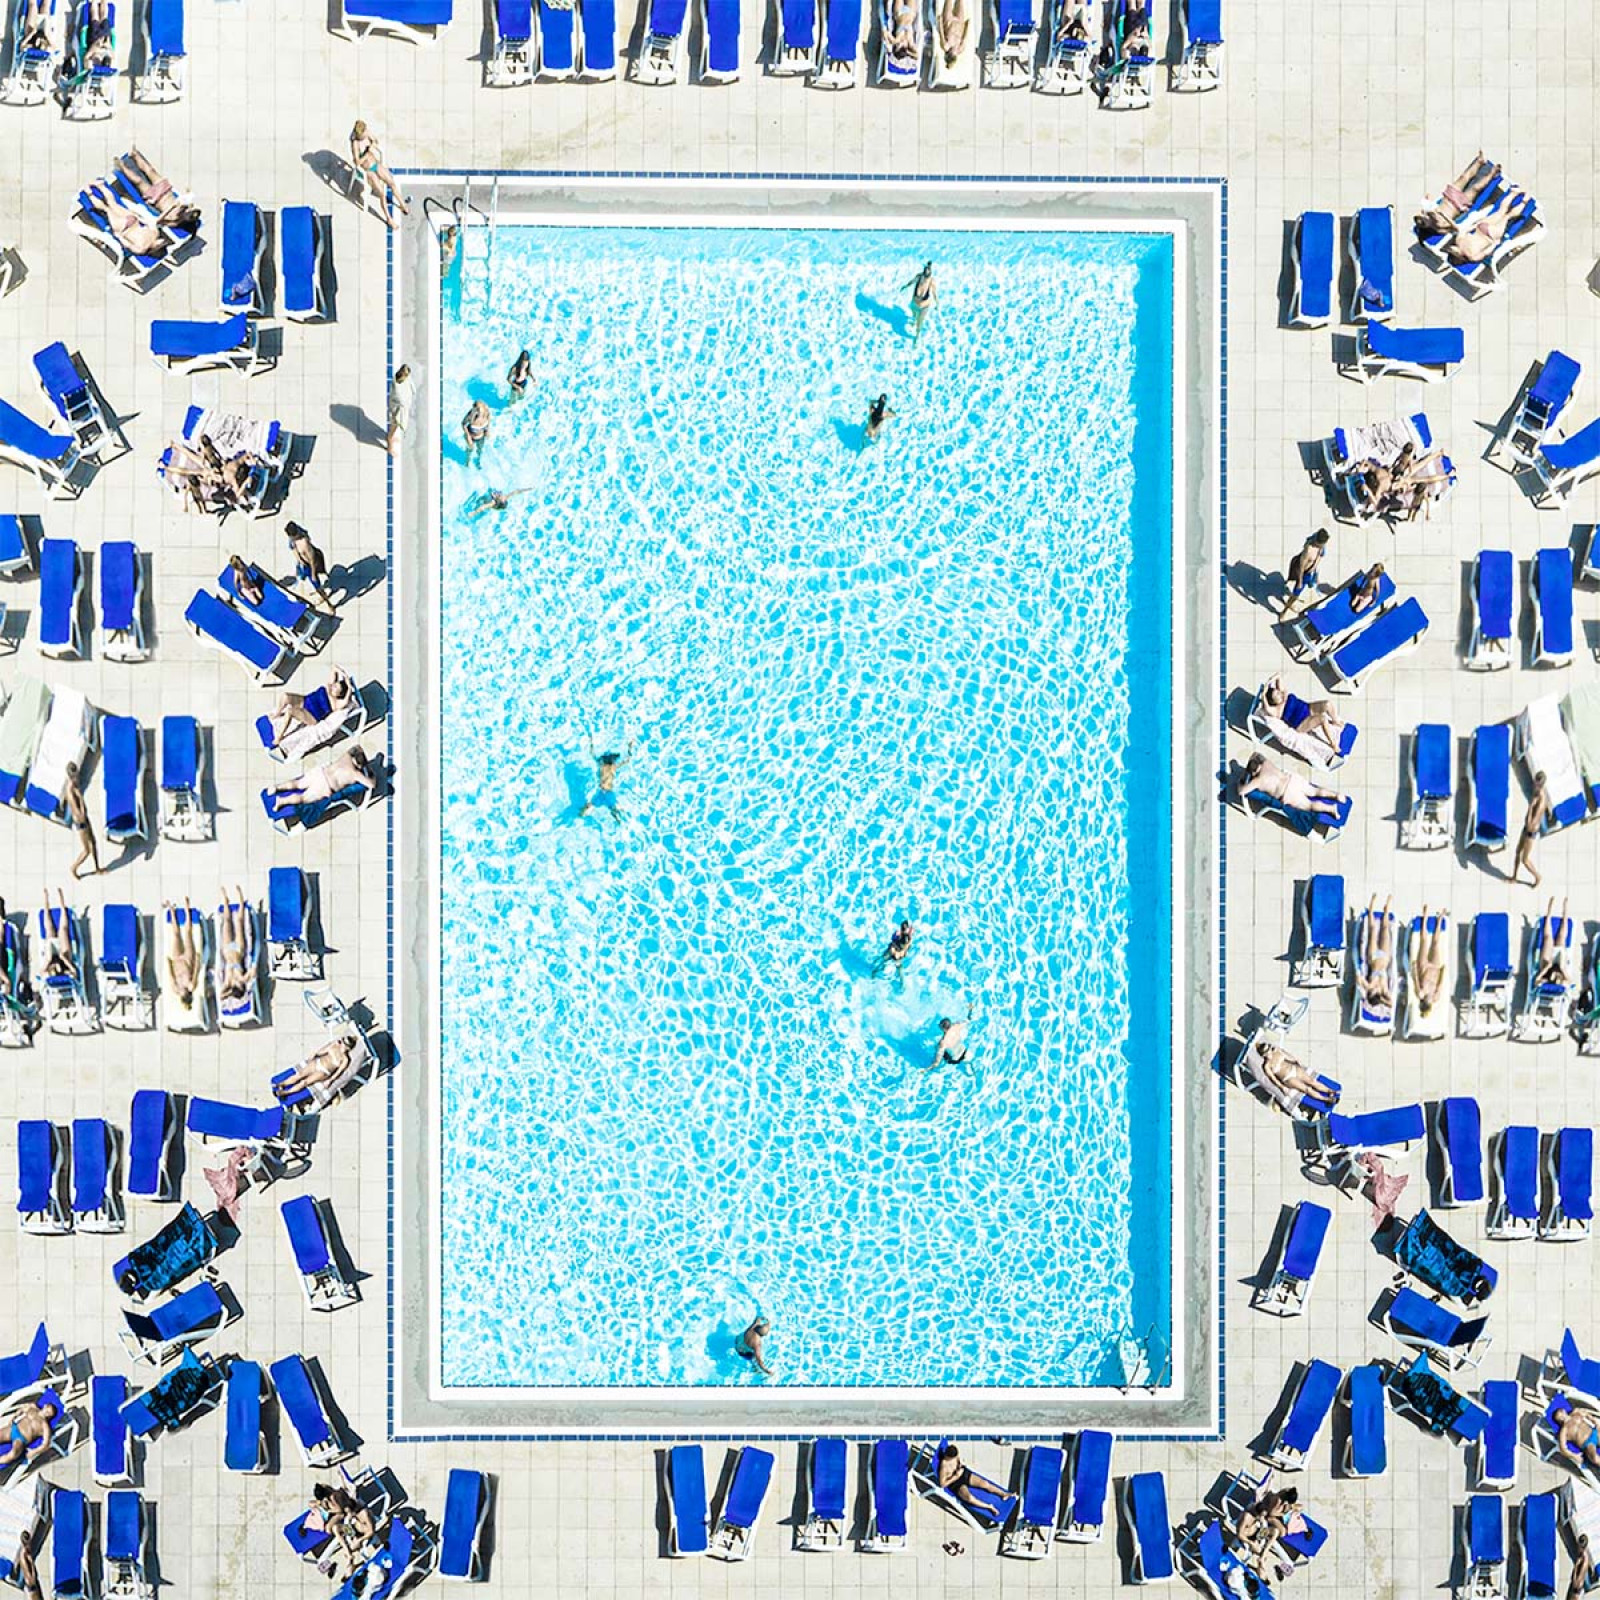 Категорія "Аерографія". 2 місце: Gysel Fernandini, “Swimming Pool, Barcelona 2019”